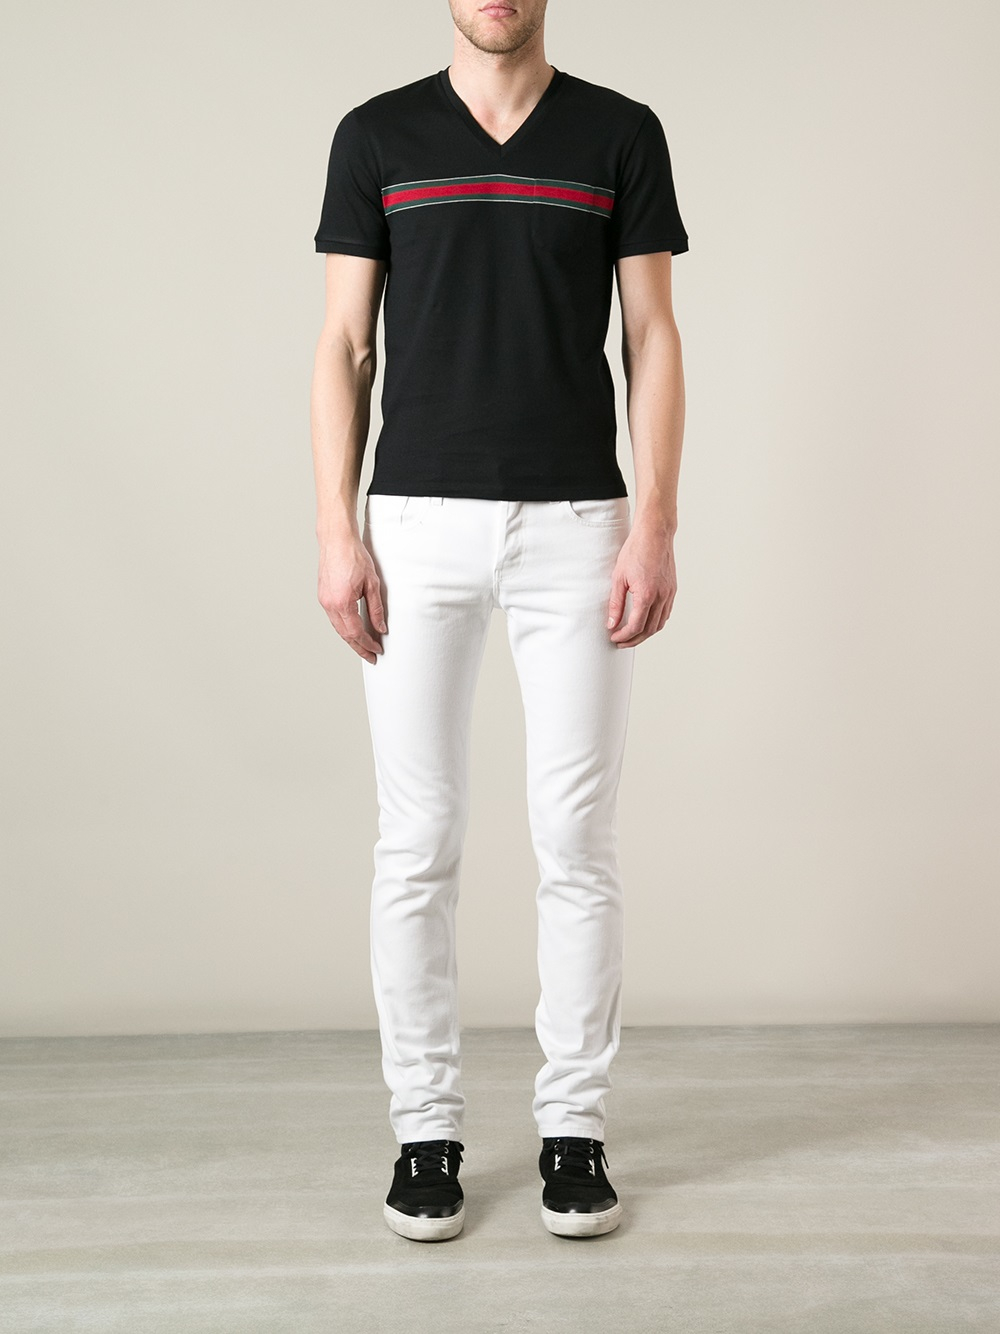 Gucci Vneck Tshirt in Black for Men - Lyst